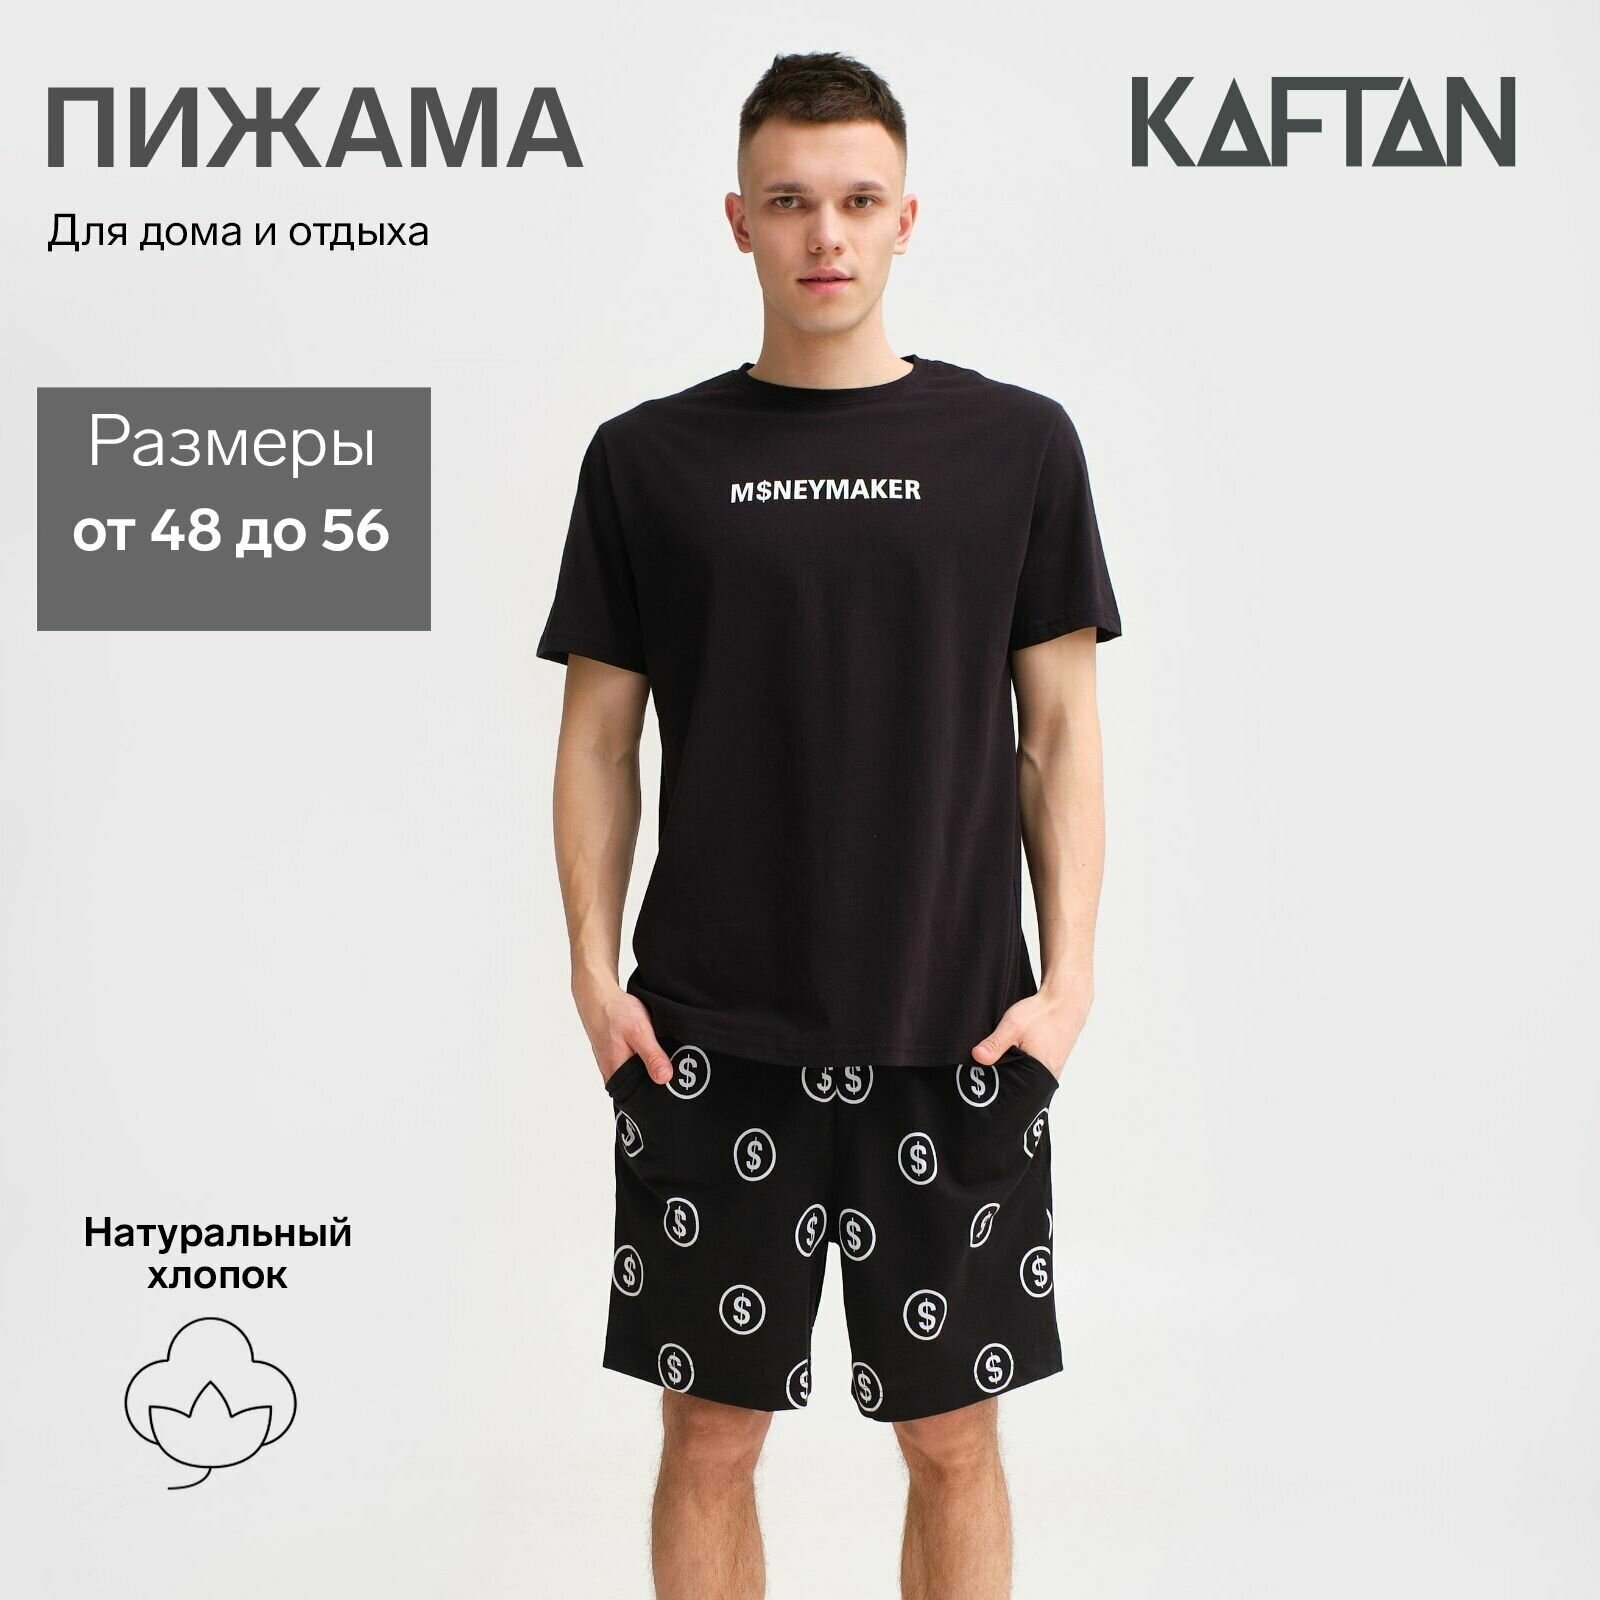 Пижама Kaftan, футболка, шорты, размер 48, черный - фотография № 1